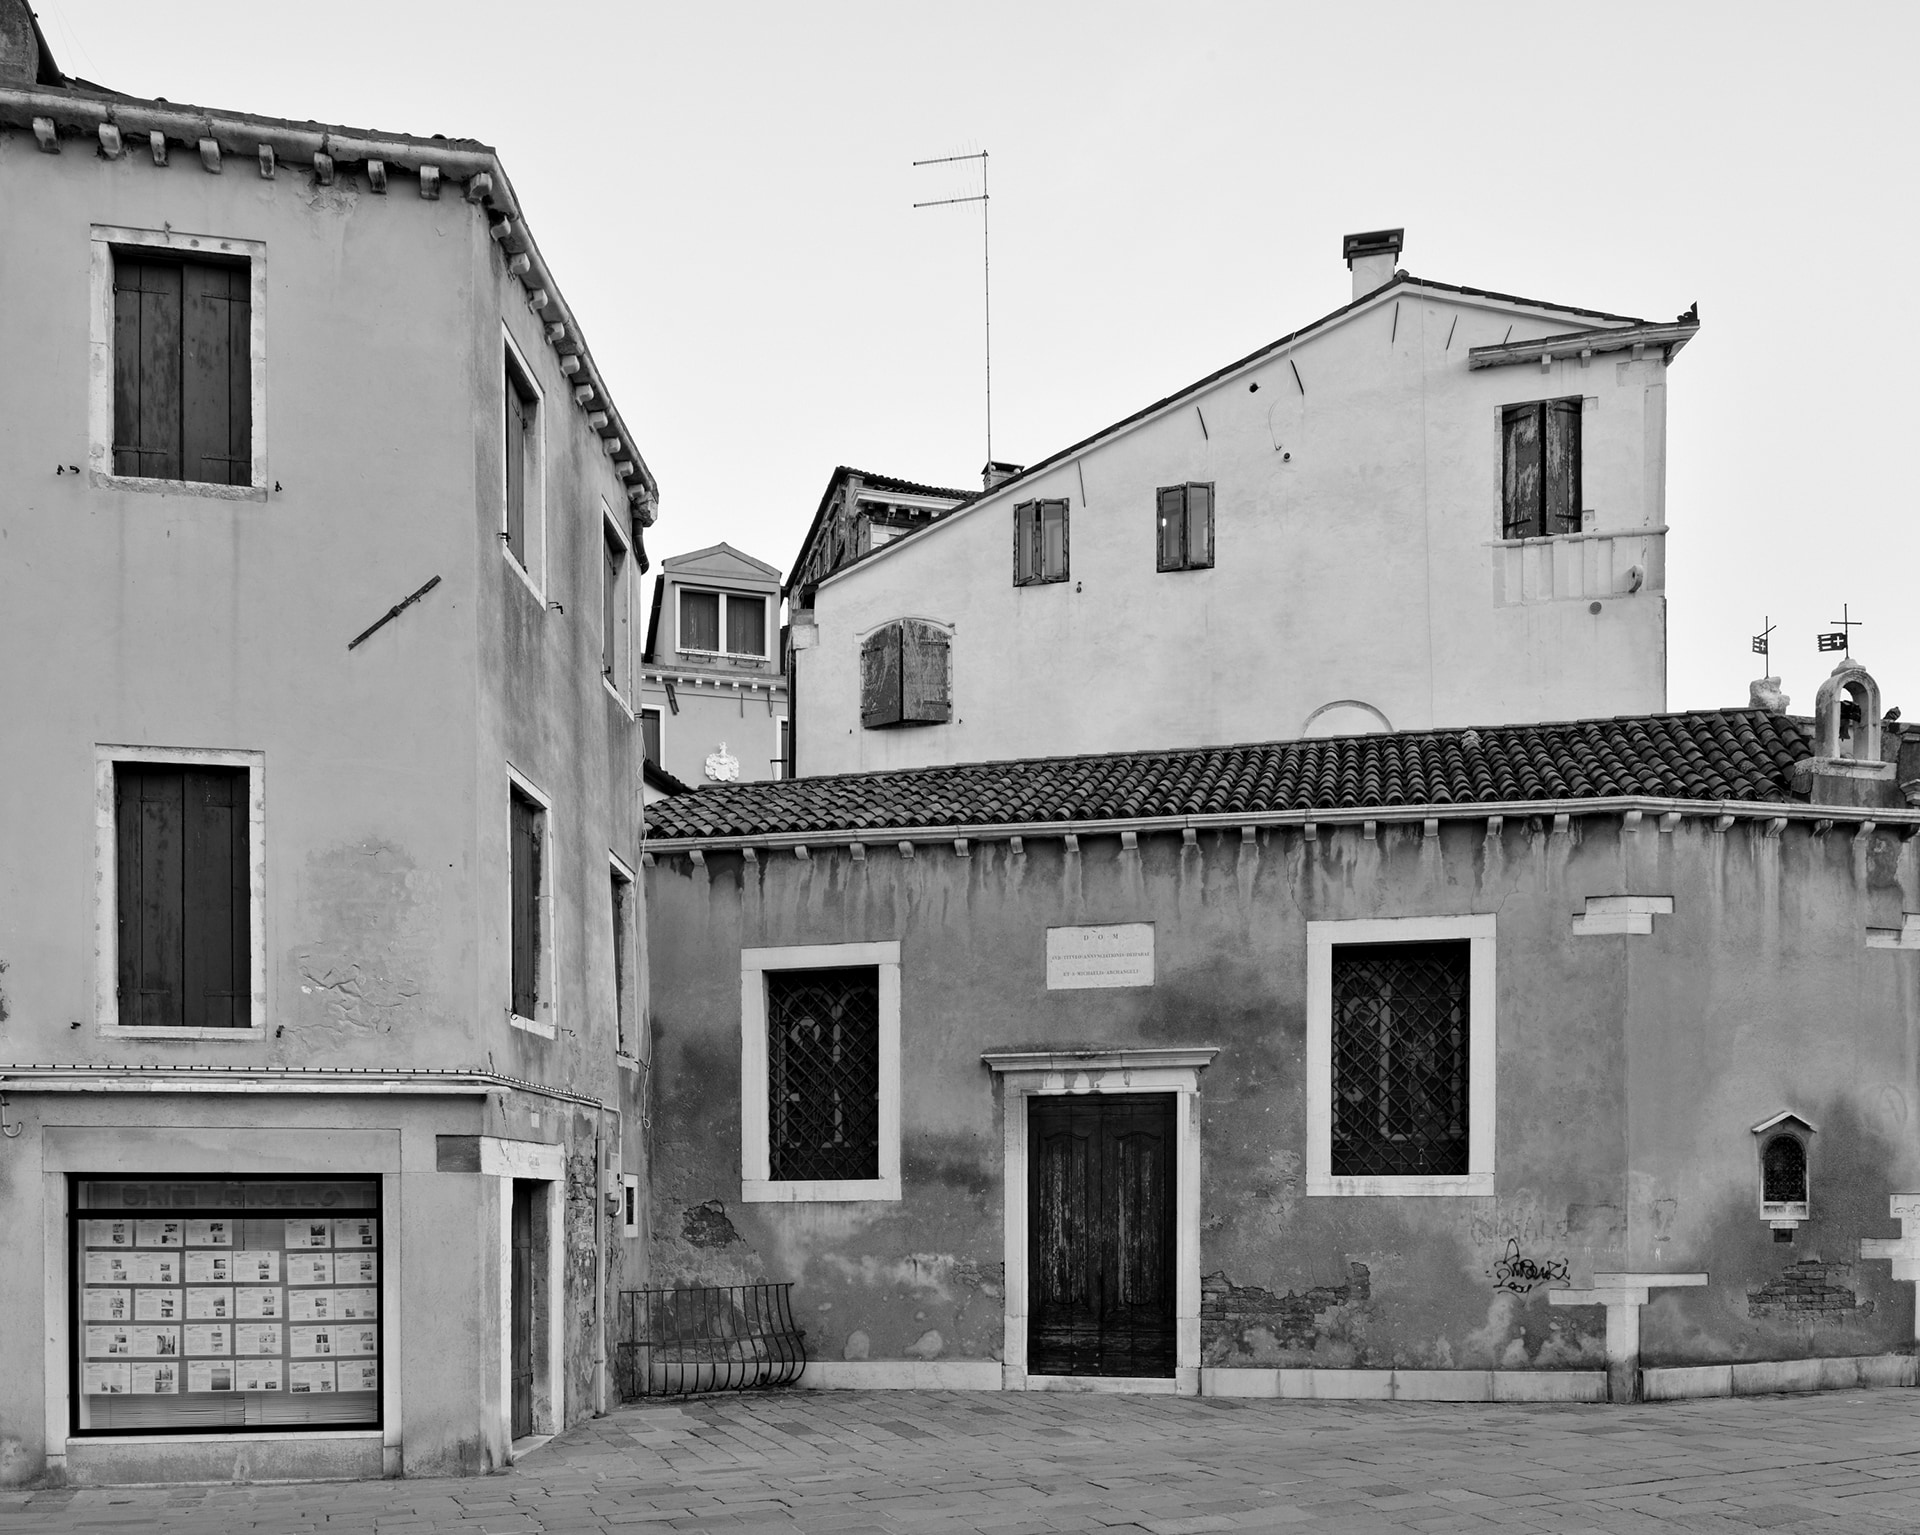  San Marco, Campo Sant’Anzolo, 2014, Venice Urban Photo Project / Mario Peliti